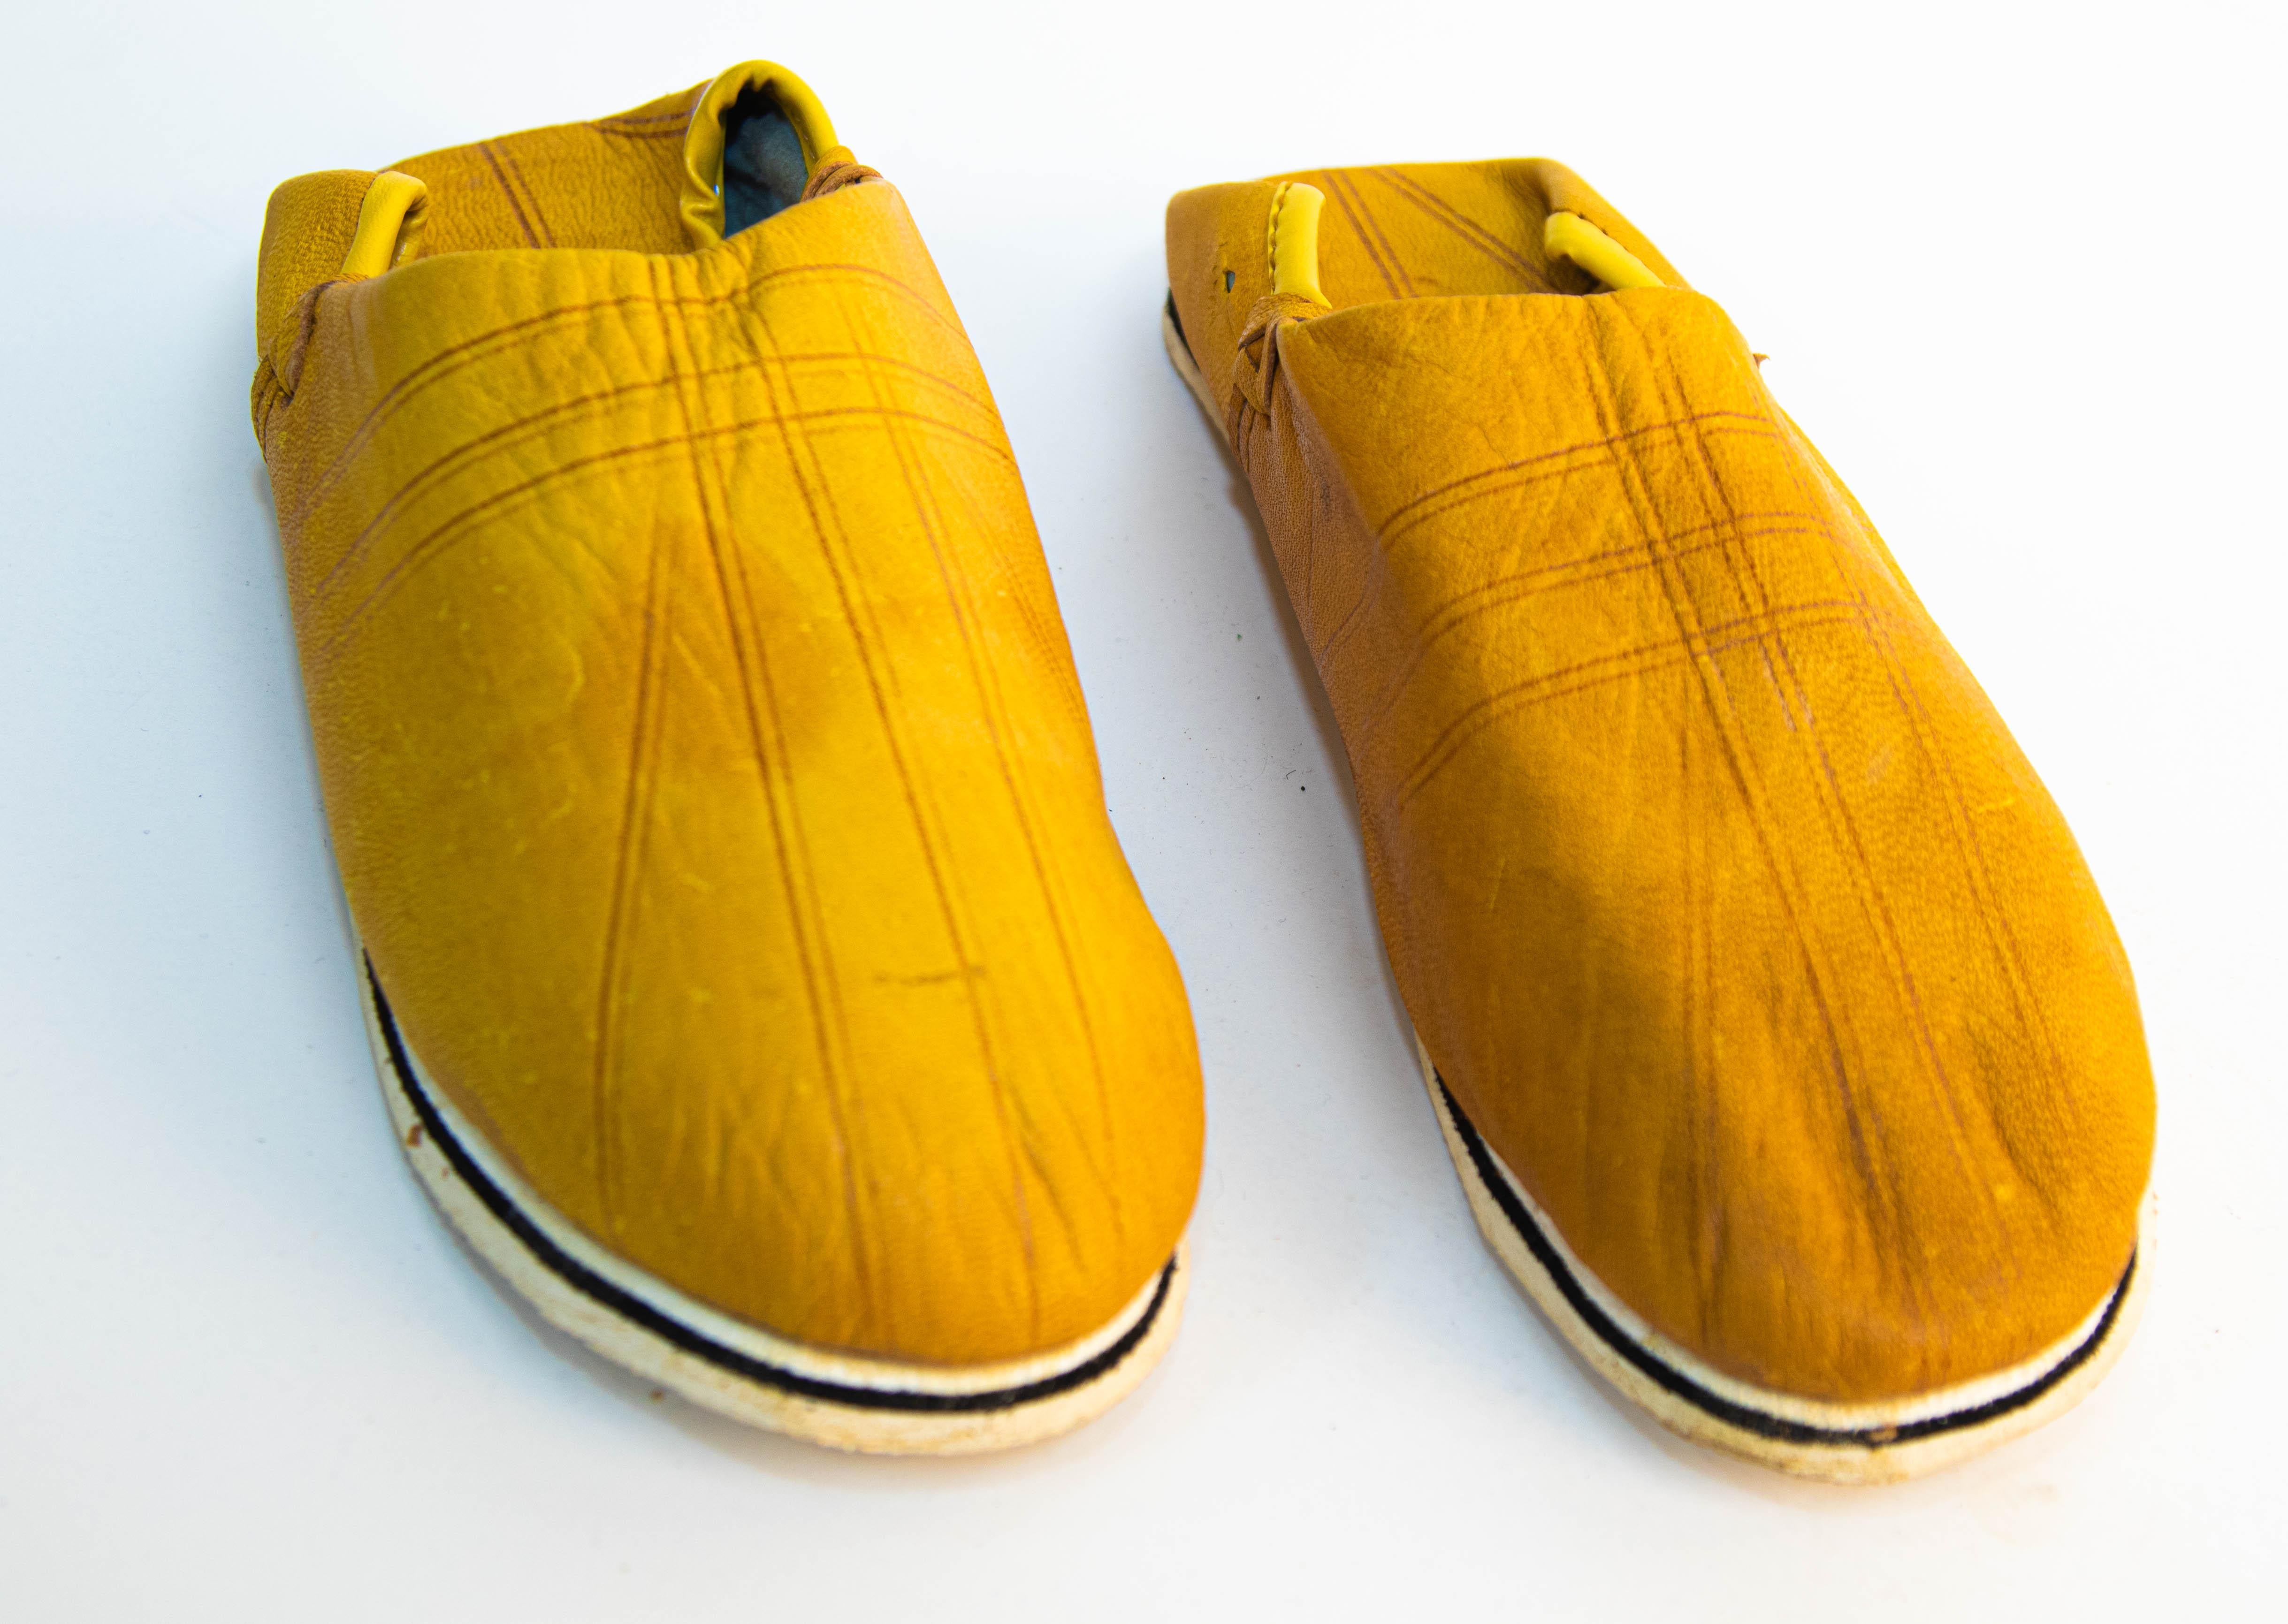 Les pantoufles ethniques jaunes en cuir marocain sont fabriquées à la main.
Fabriqué à la main à Fès au Maroc.
Des chaussures marocaines à porter autour de la piscine ou à la plage, juste à temps pour l'été.
Mesures.
La semelle mesure 9,5 po x 3,5